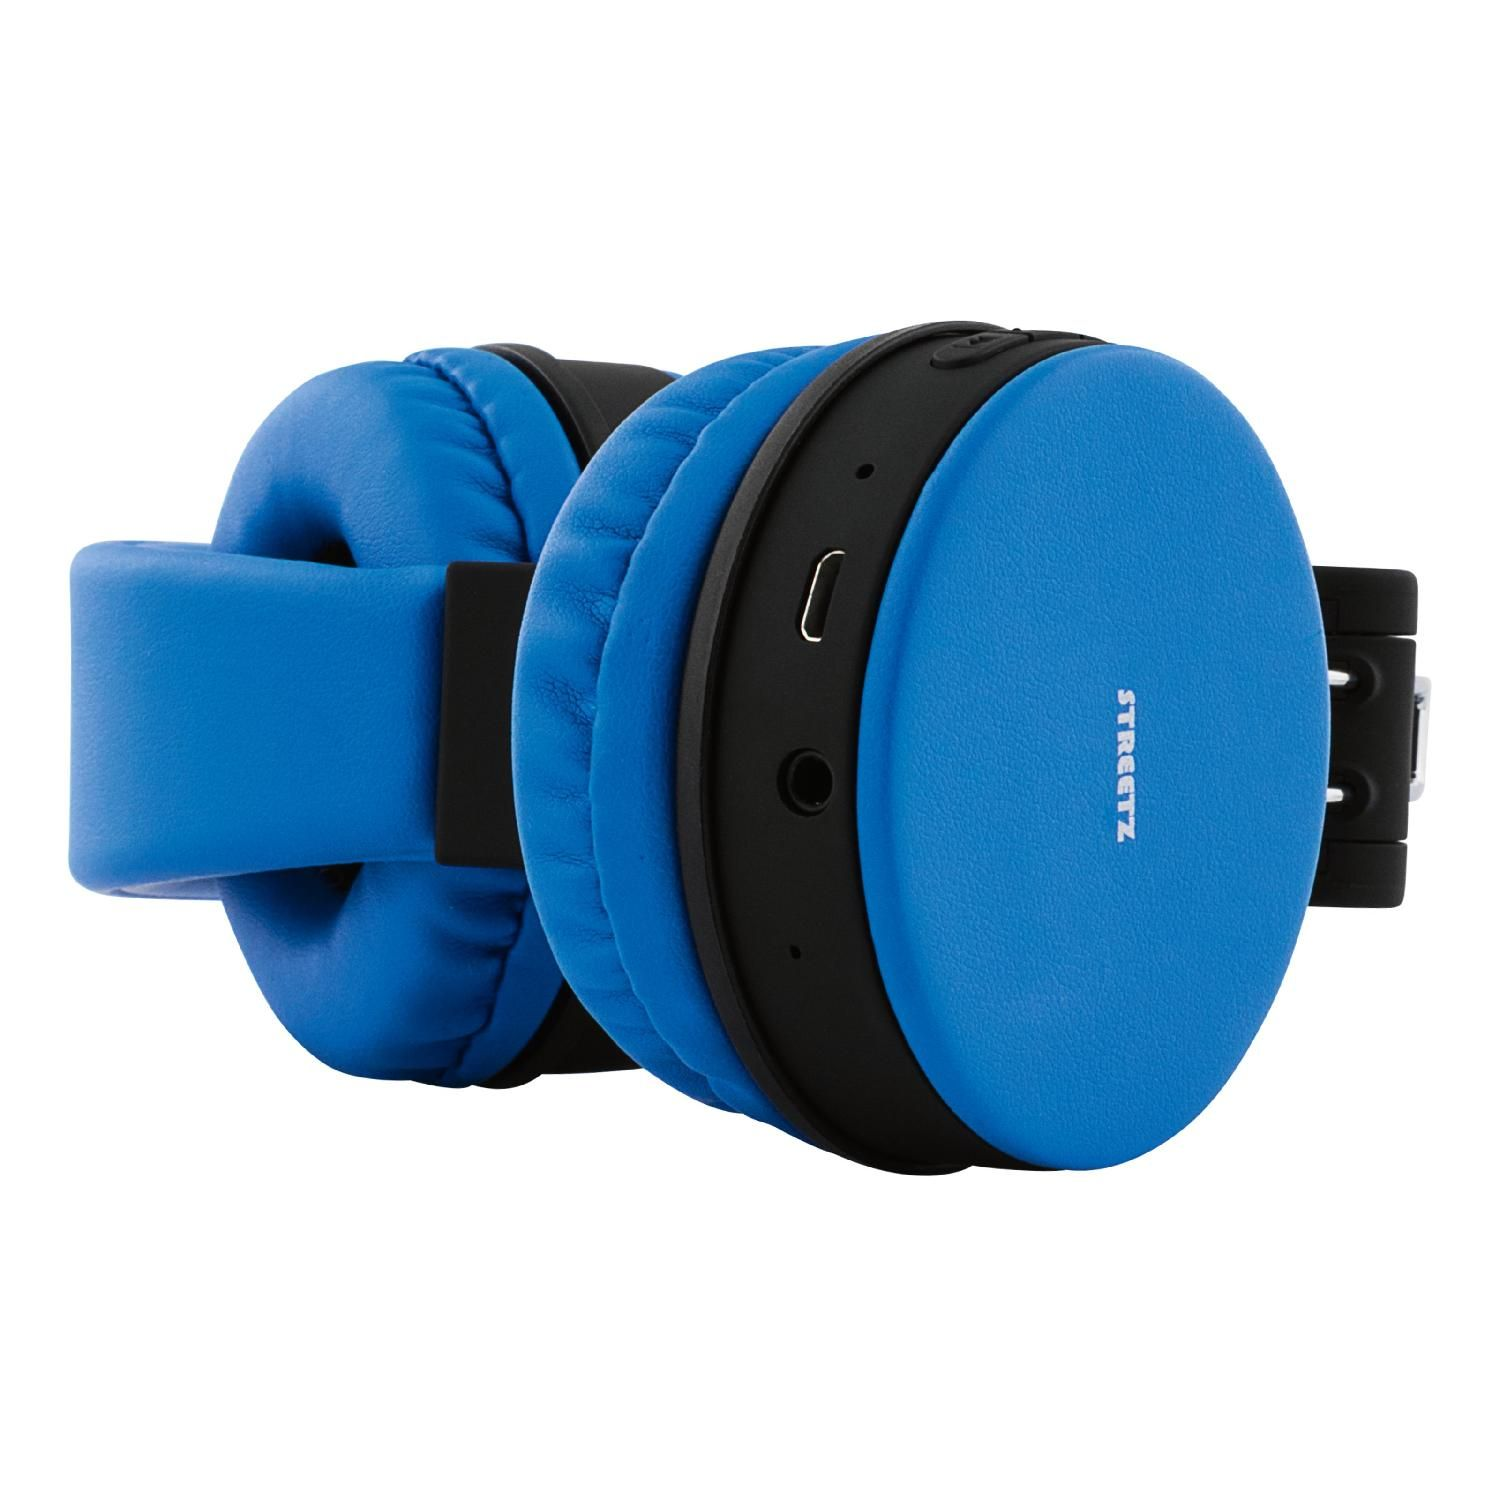 STREETZ Bluetooth blau Kopfhörer, Kopfhörer faltbar, Over-ear